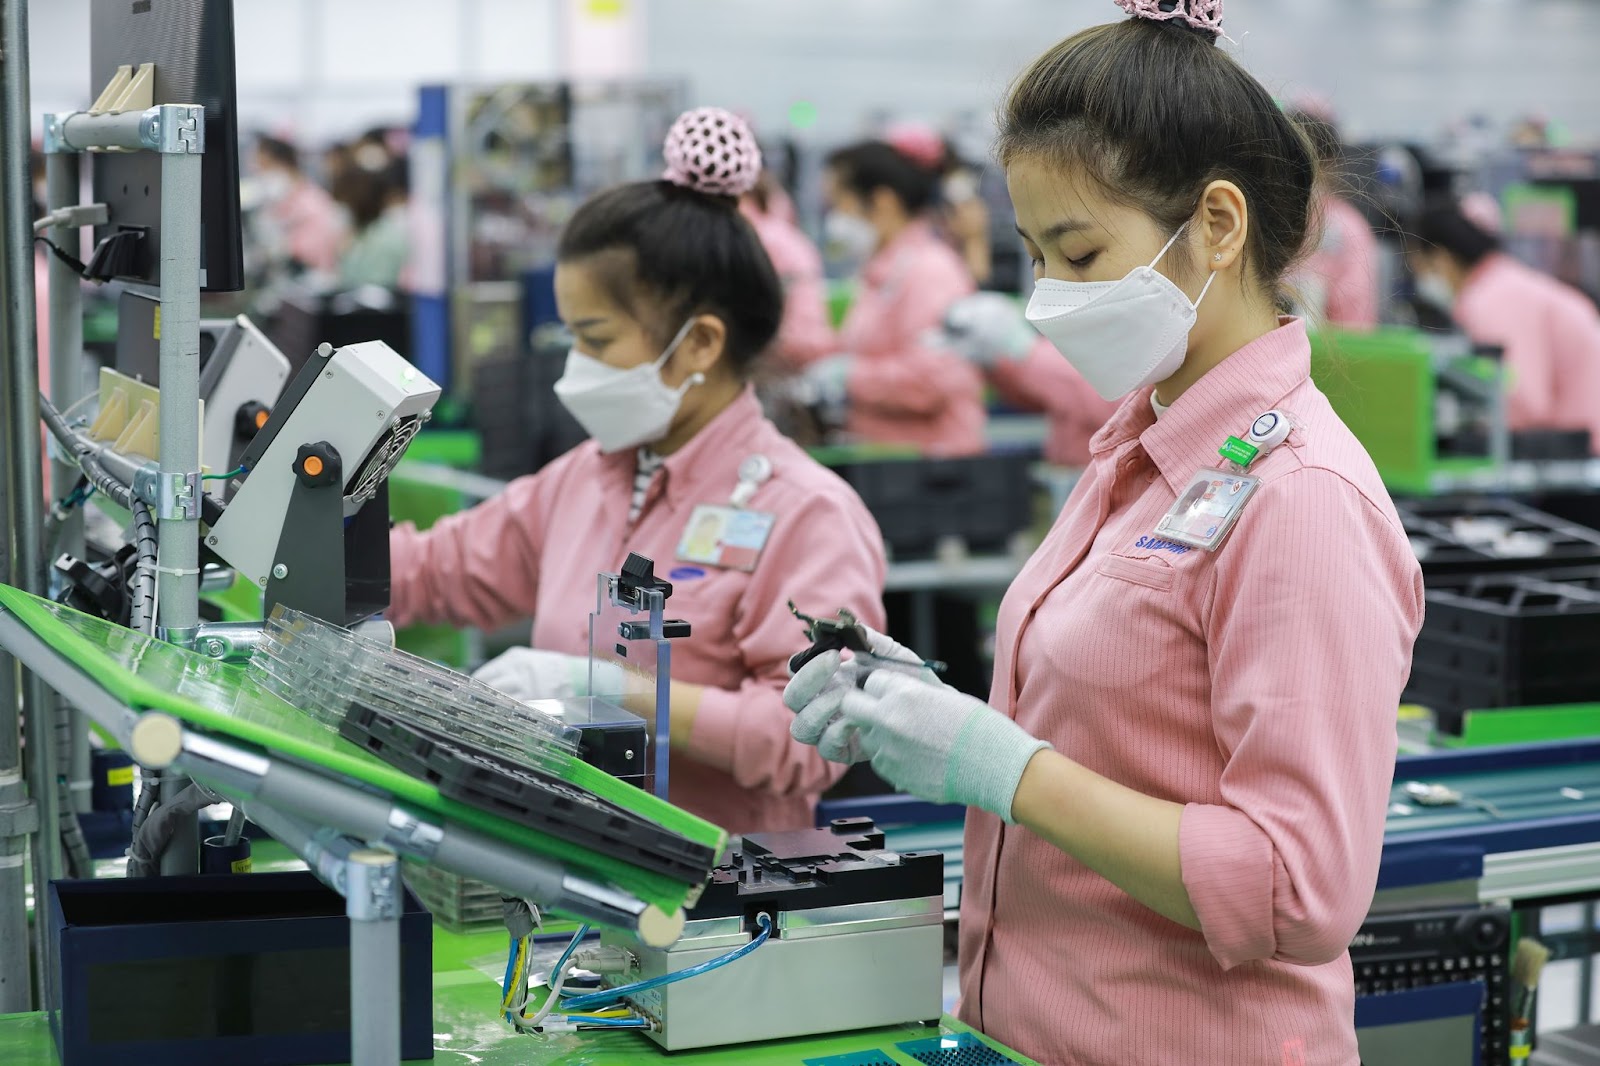 Công nhân lắp ráp sản phẩm hiện đang được tuyển dụng khá nhiều tại Tây Ninh